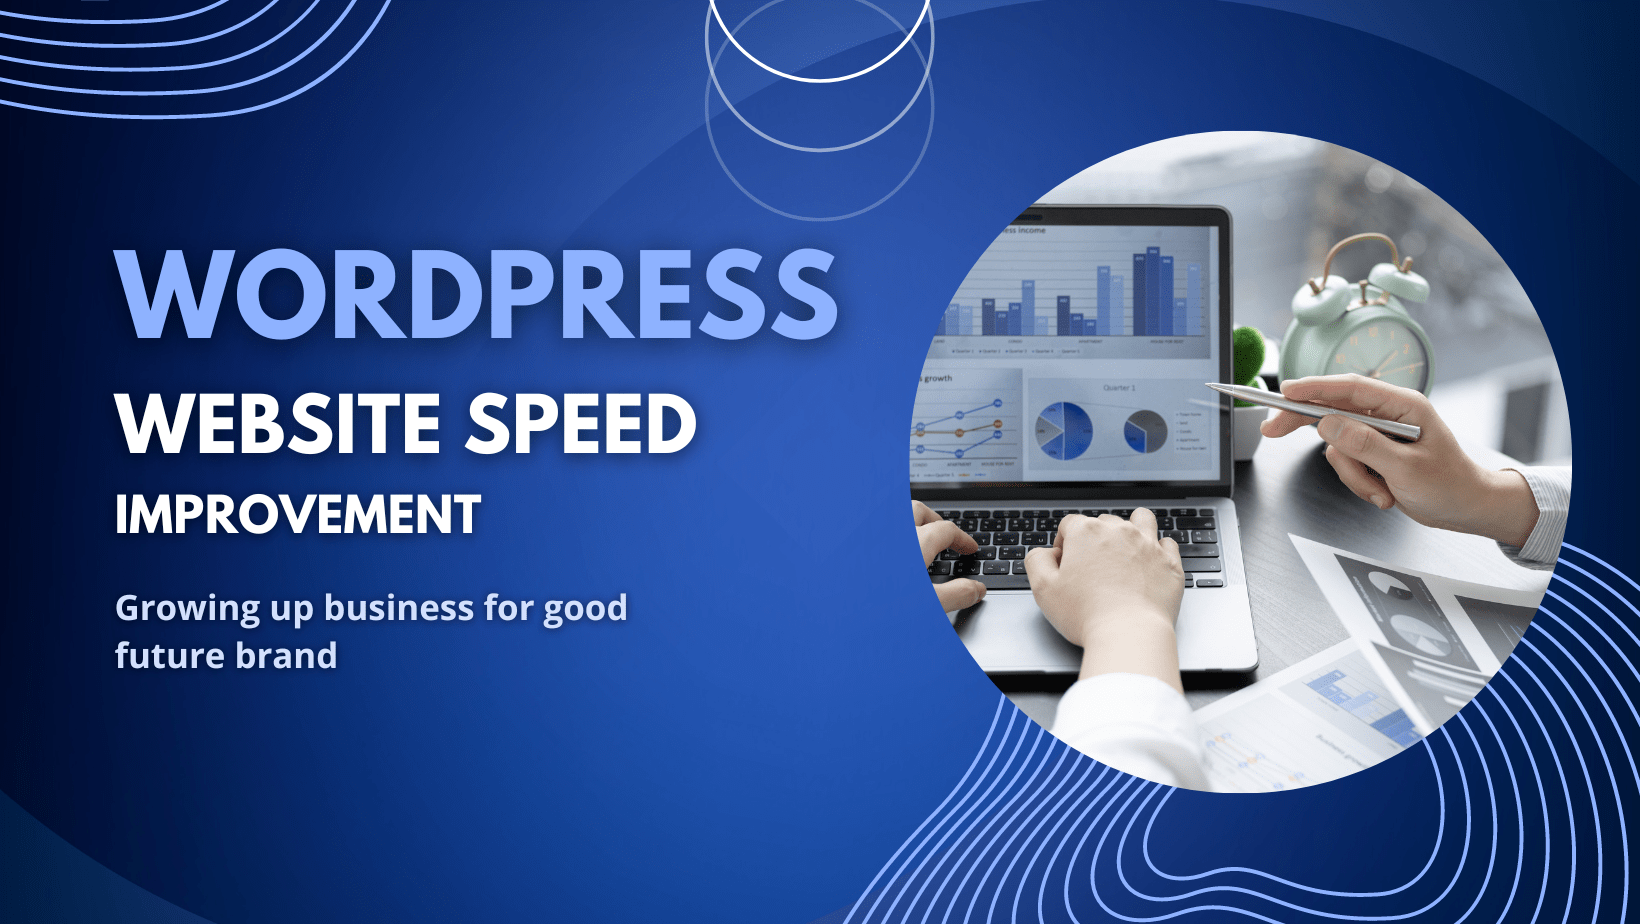 WORDPRESS Website speed optimization with Wpressexperts